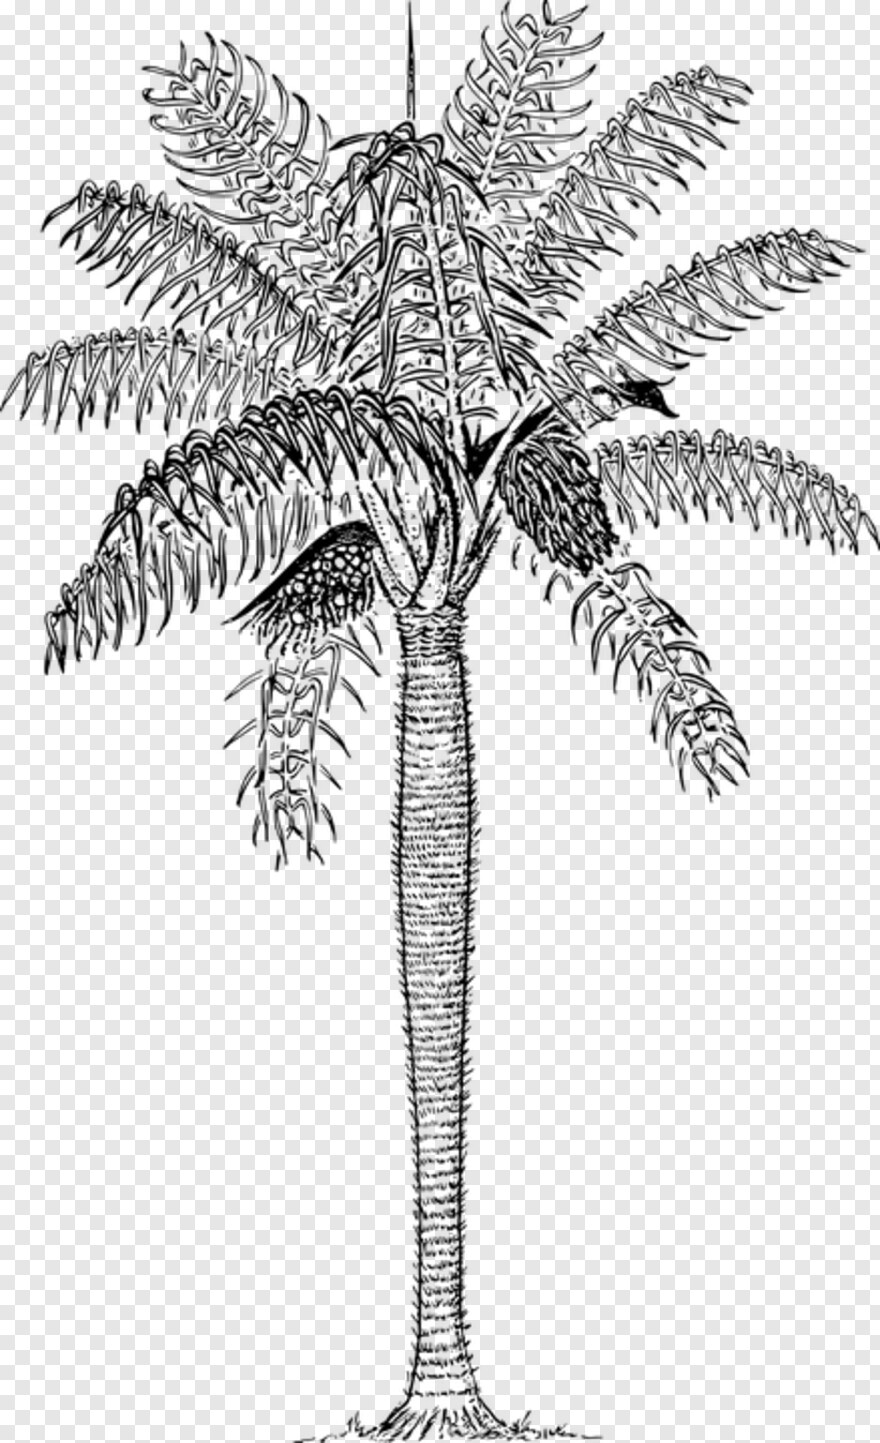 palm-tree-silhouette # 707043